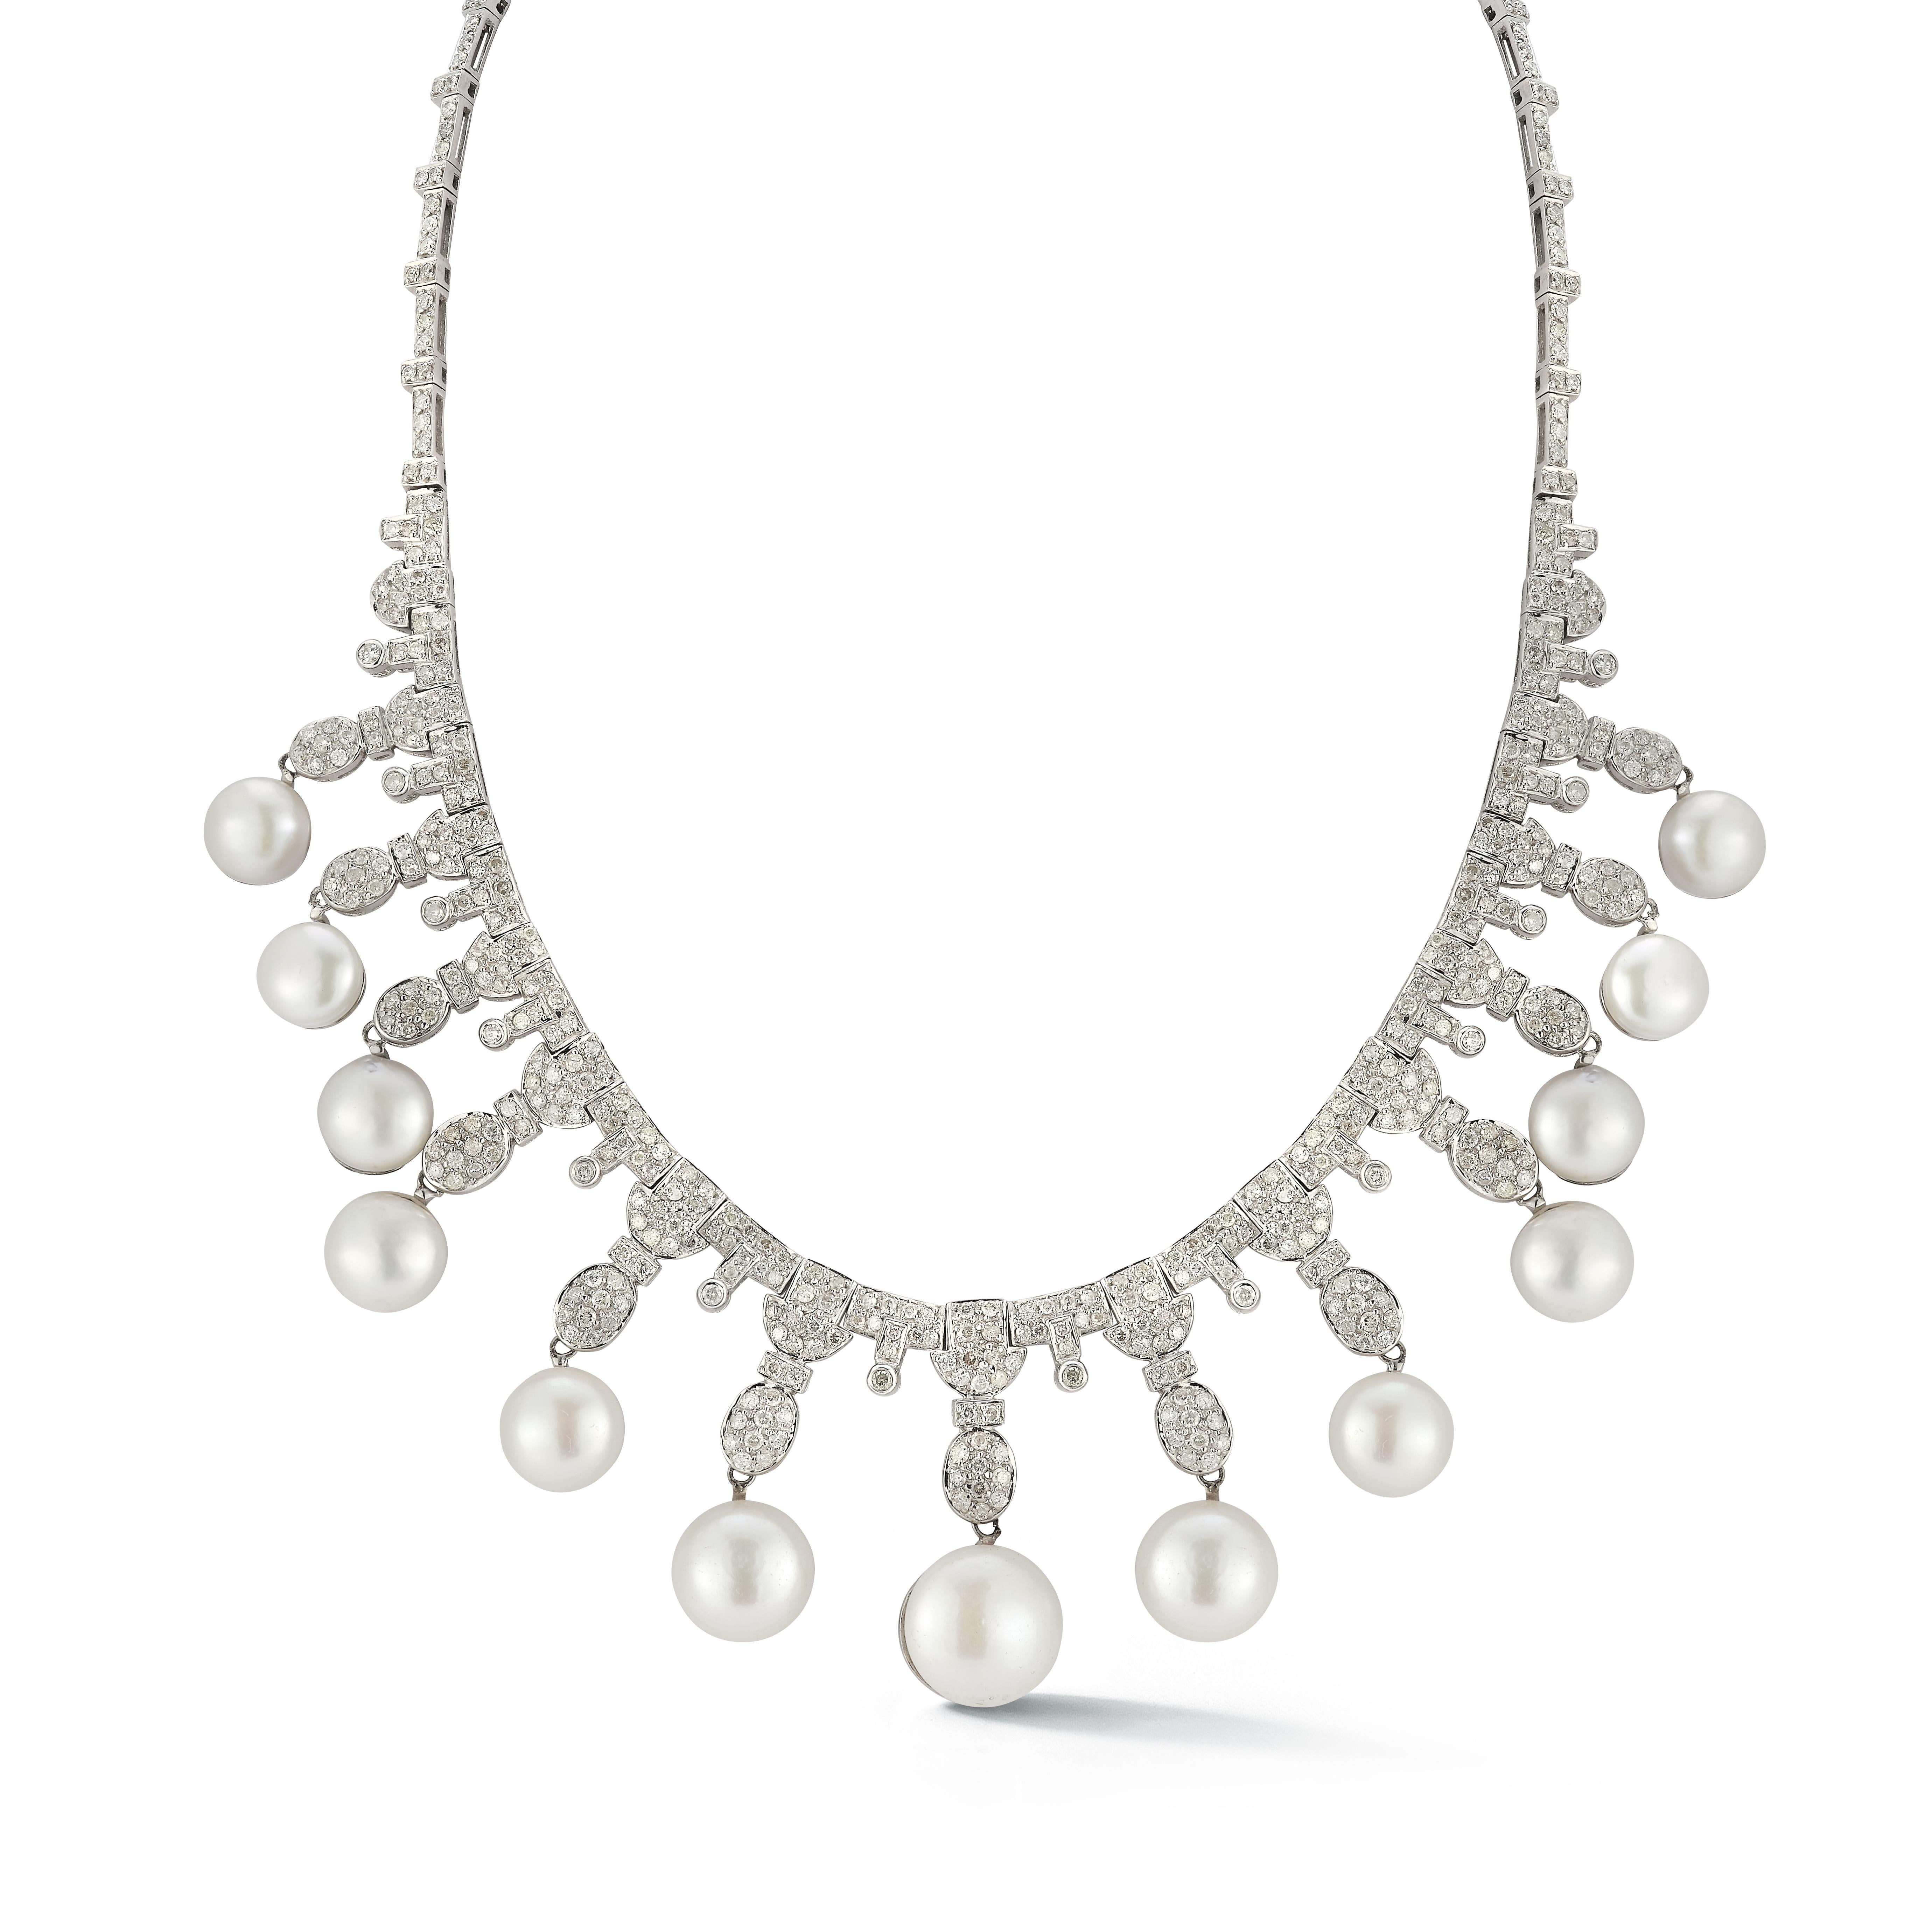 Collier de perles et de diamants

Un collier en or blanc 18 carats serti de 13 perles et de diamants ronds pesant environ 11 carats.

Longueur : 16 pouces